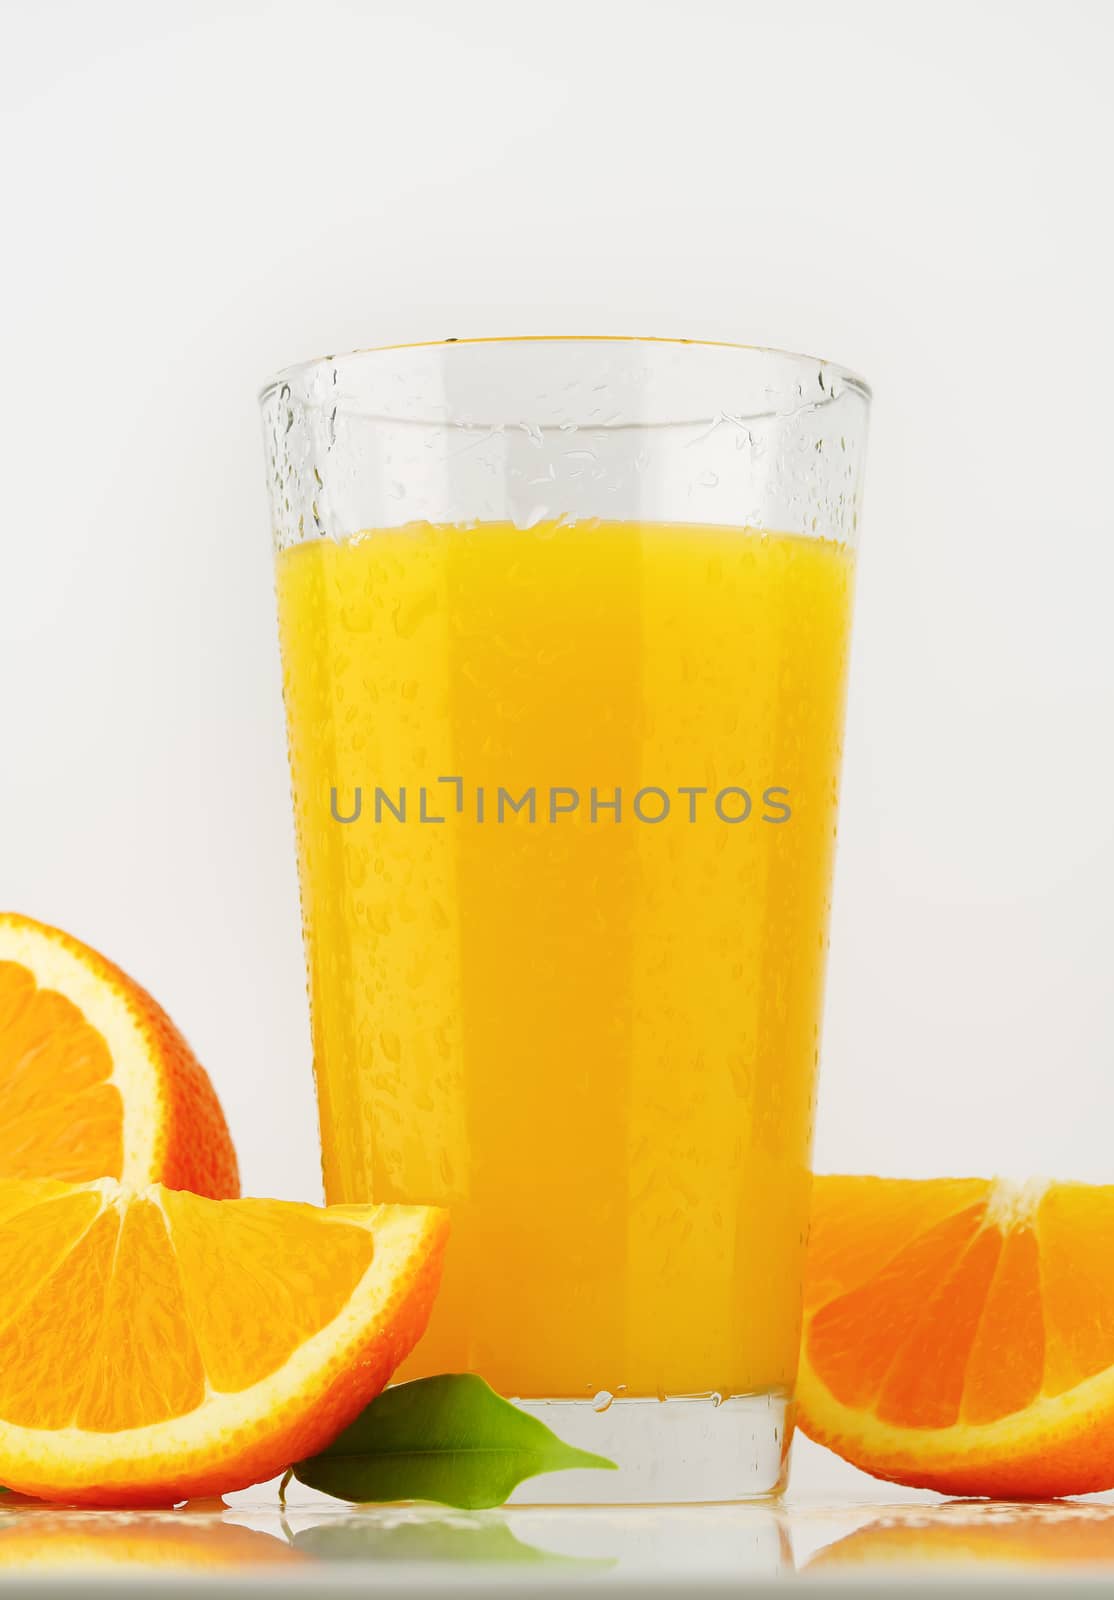 glass of orange juice on white background - close up